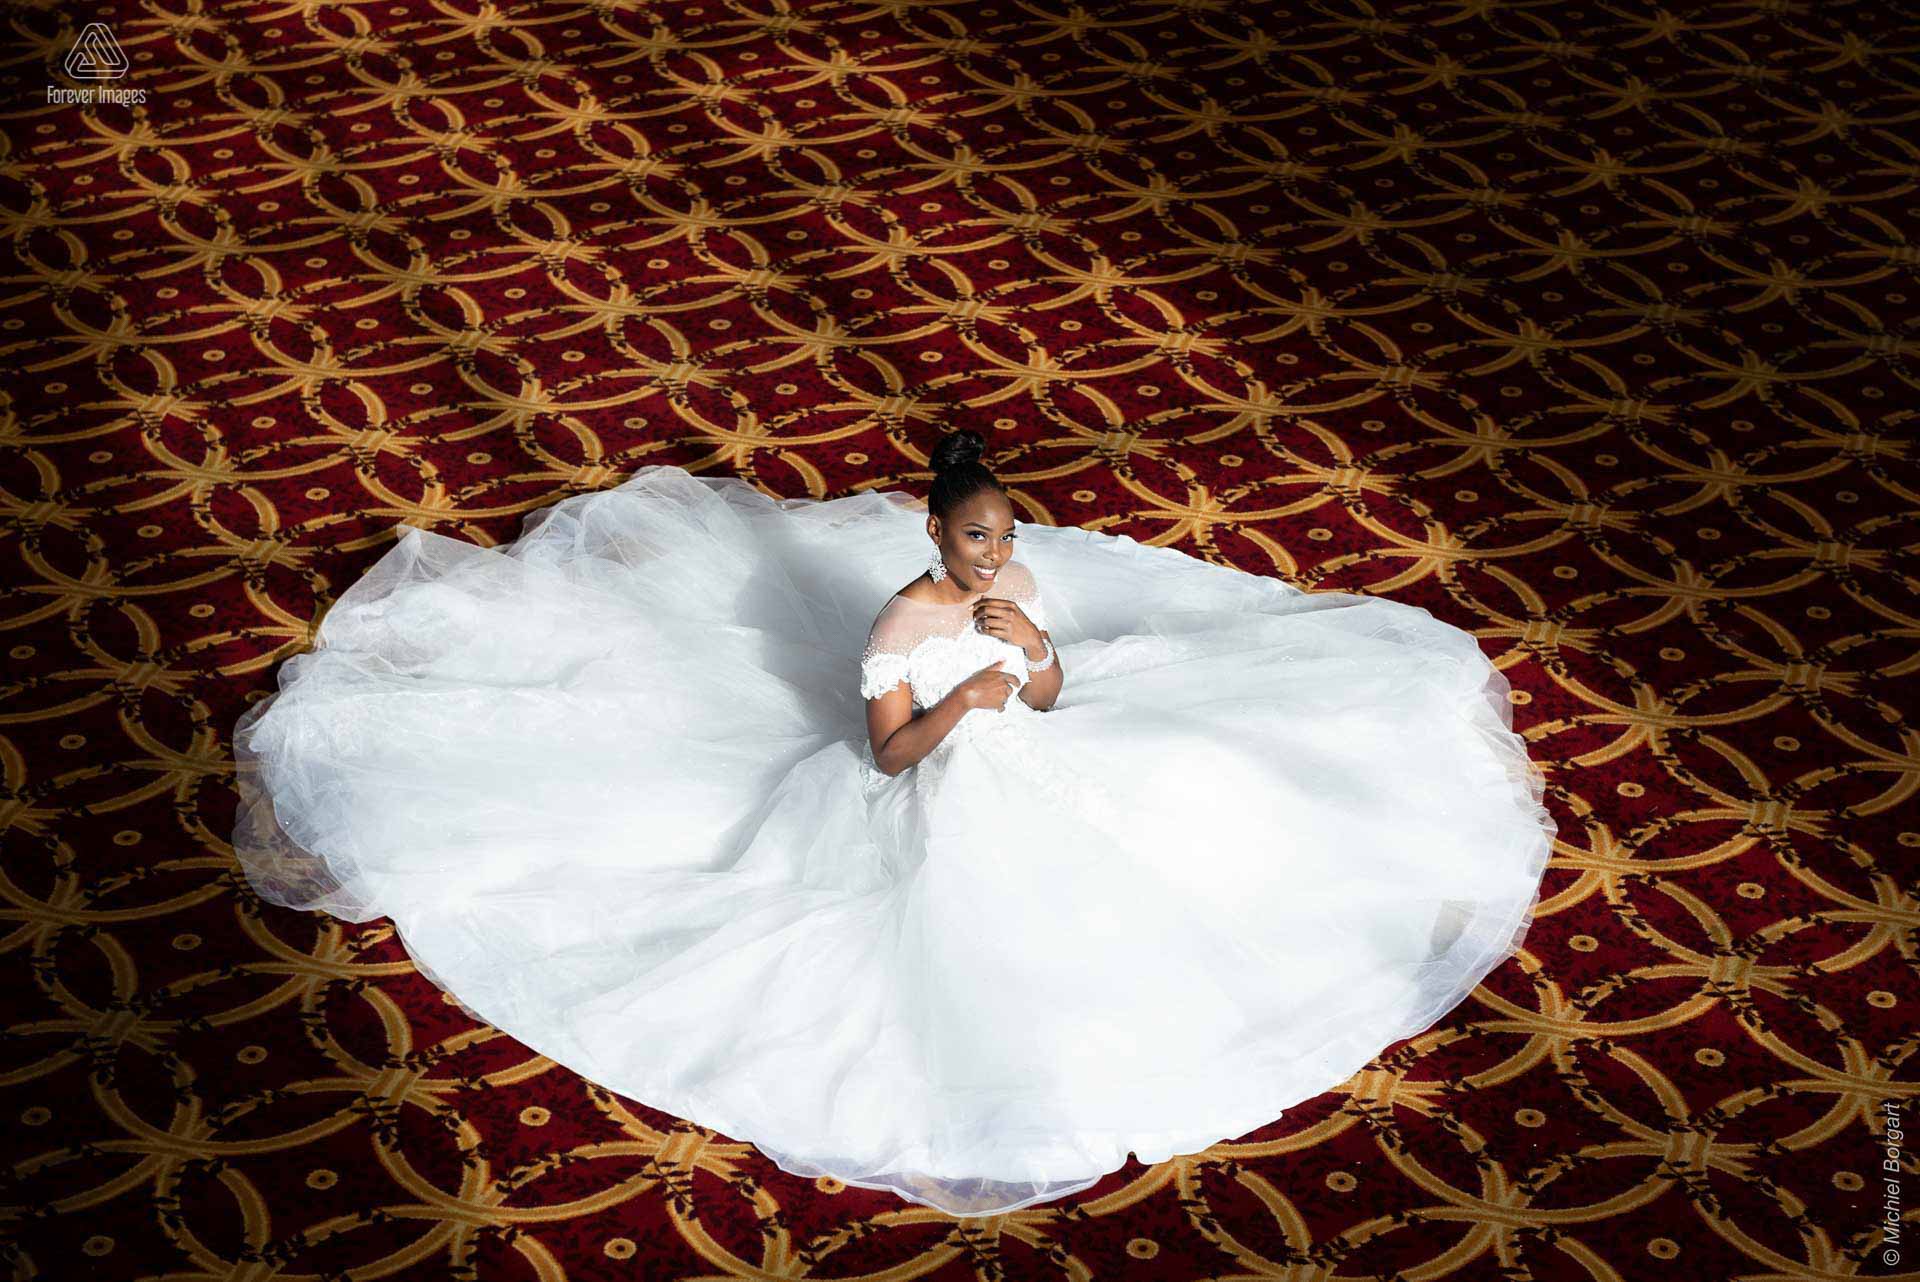 Fashionfoto bruidsjurk zittend op de grond | Mariana Pietersz Duc Nguyen Koepelkerk Amsterdam | Fashionfotograaf Michiel Borgart - Forever Images.